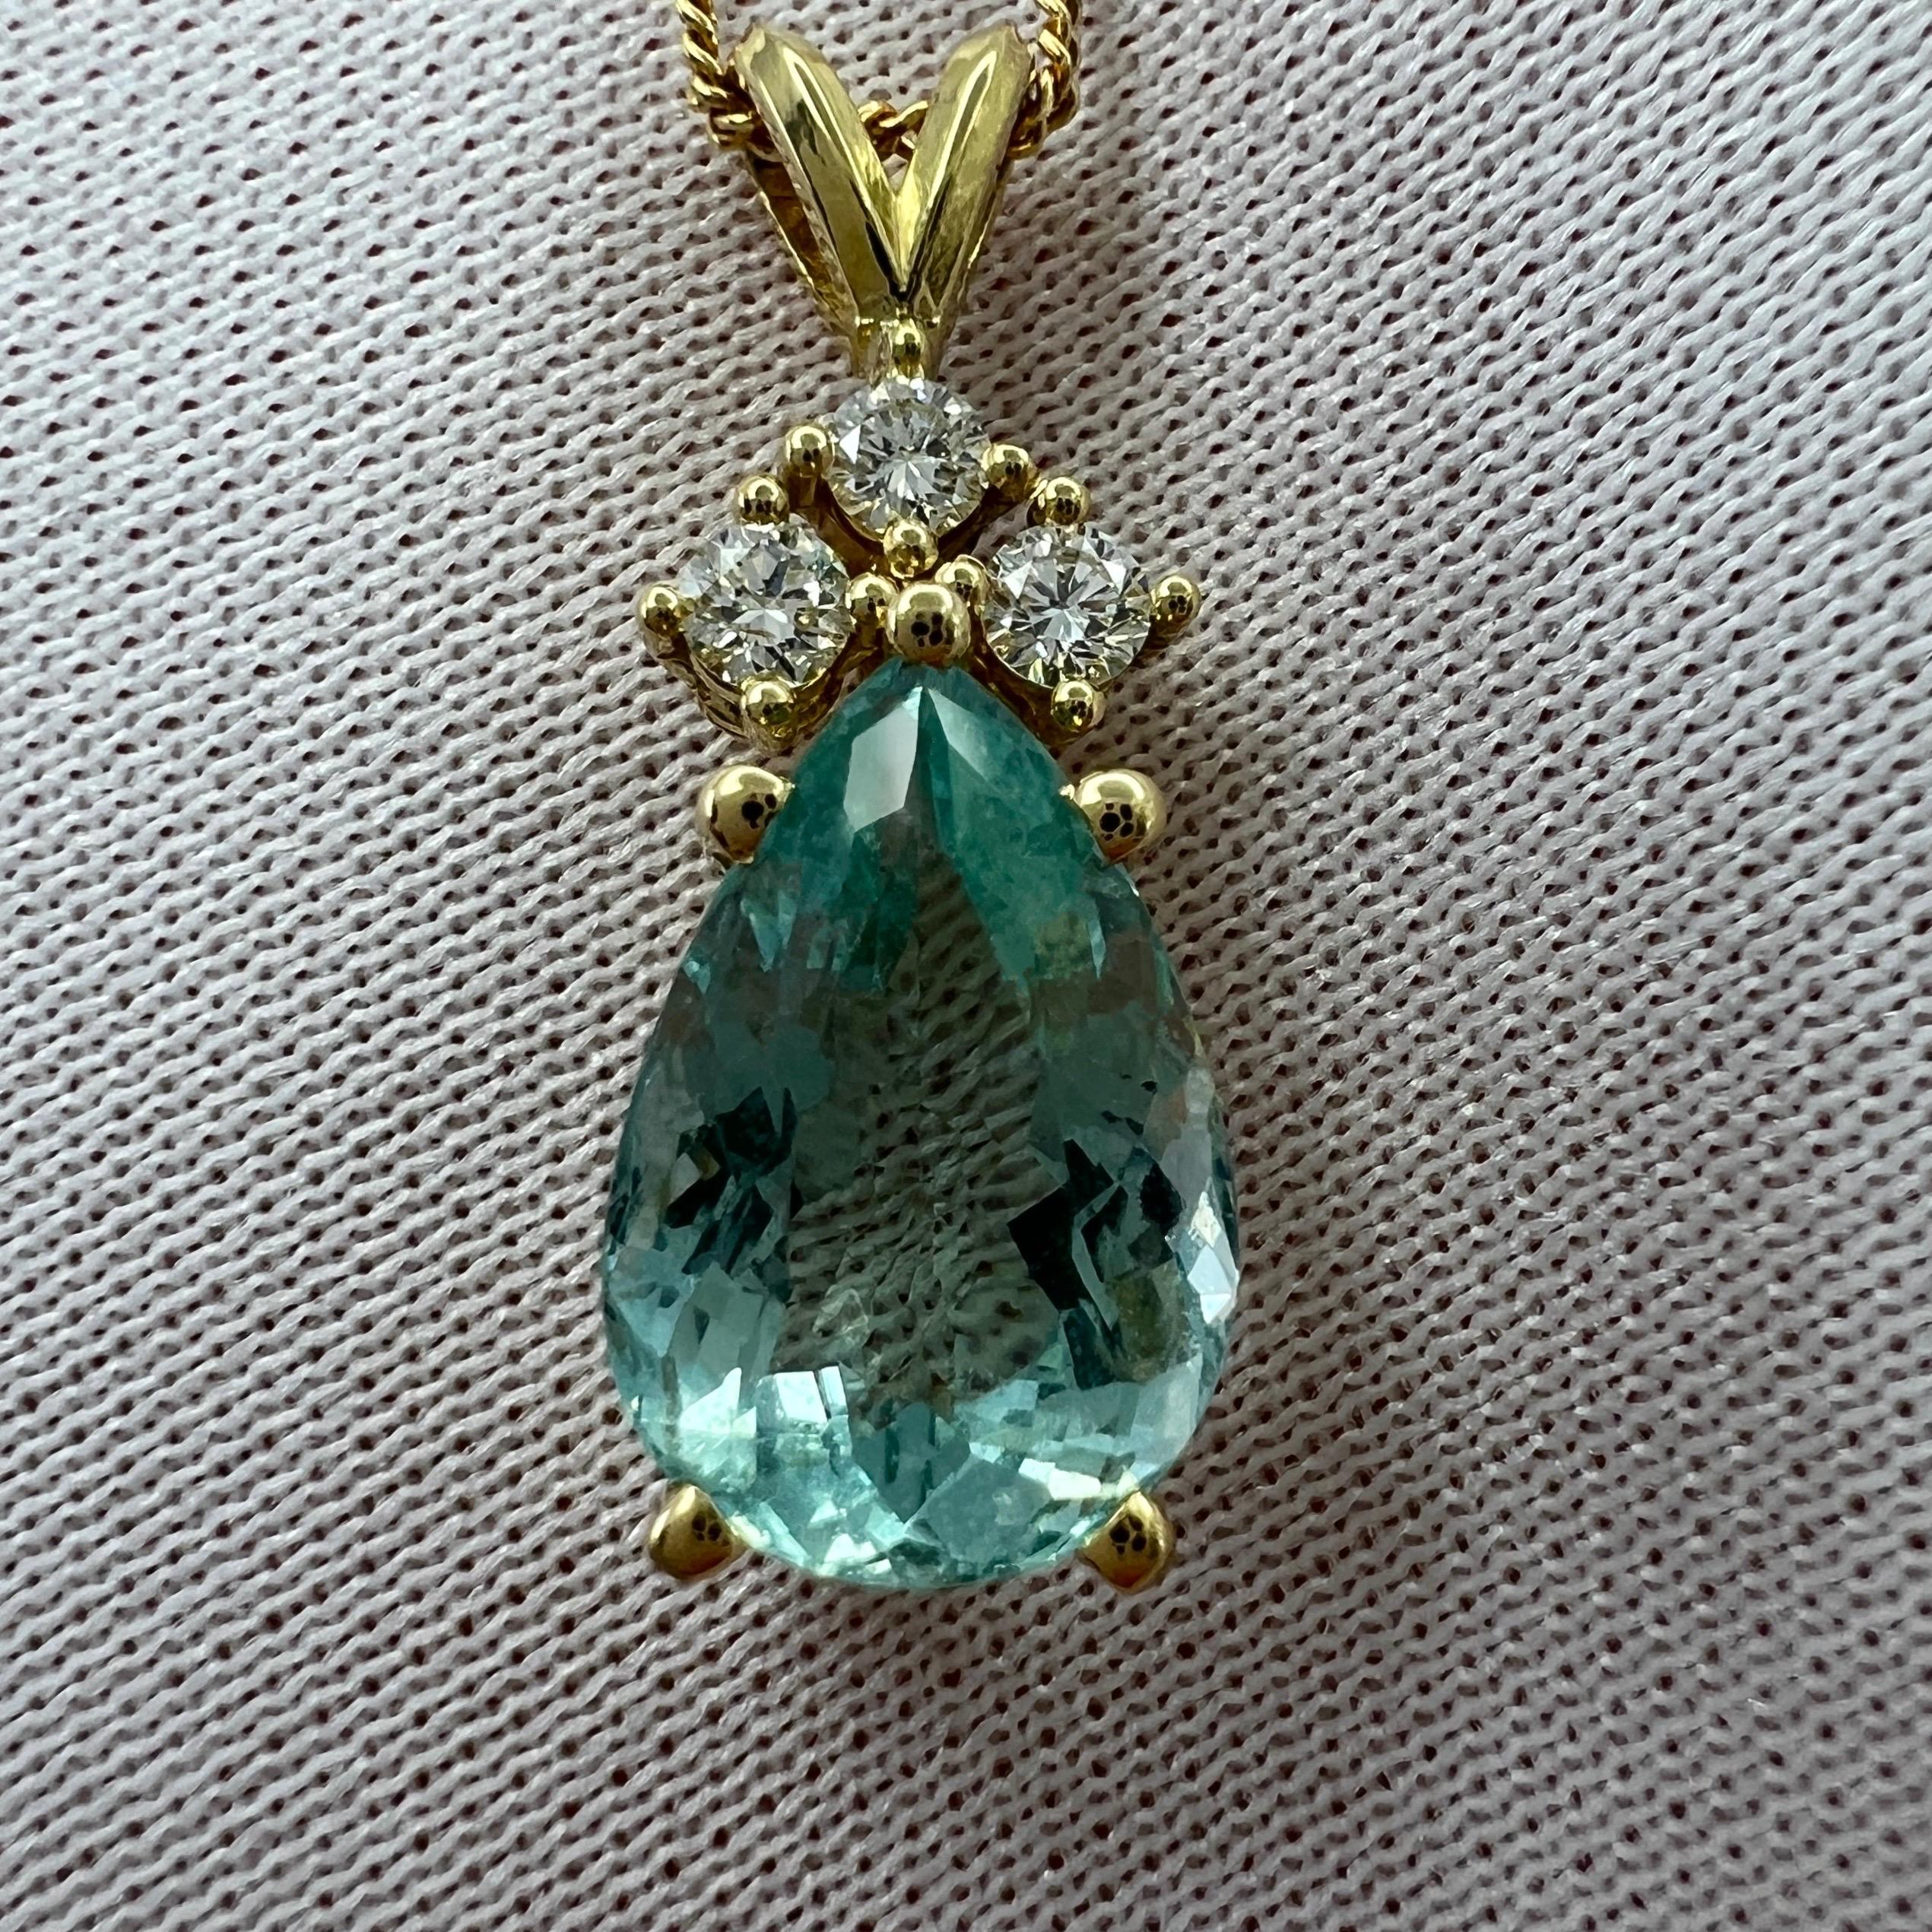 Collier pendentif en or jaune 18 carats composé d'aigue-marine bleue naturelle et de diamants.

Aigue-marine de 3,30 carats d'une superbe couleur bleu vert 